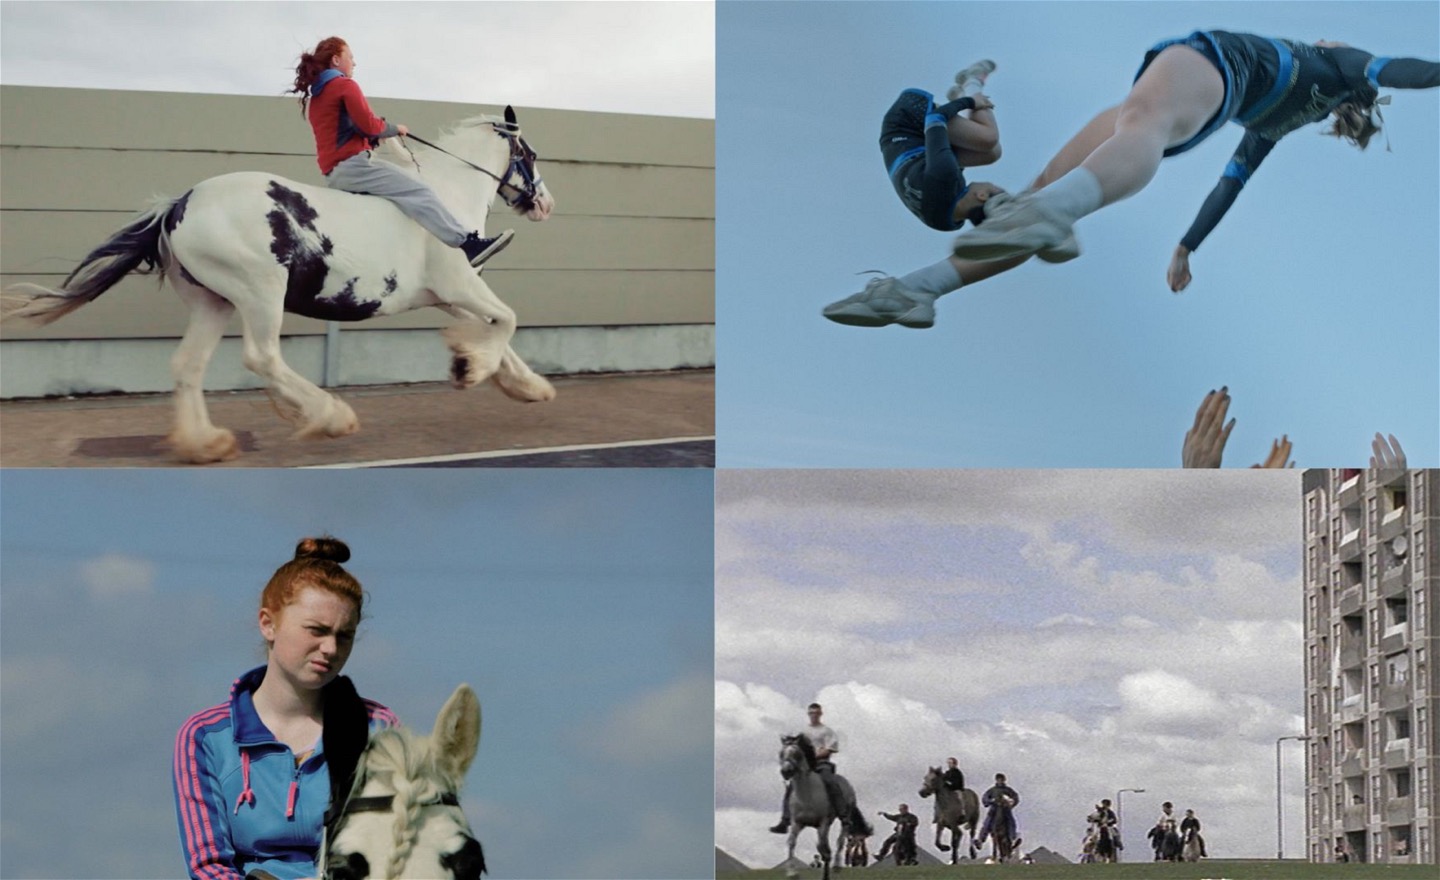 Bildkollage med fyra motiv; tjej på häst, cheerleaders i ett kast, tjej på häst och personer som rider på en gräsmatta